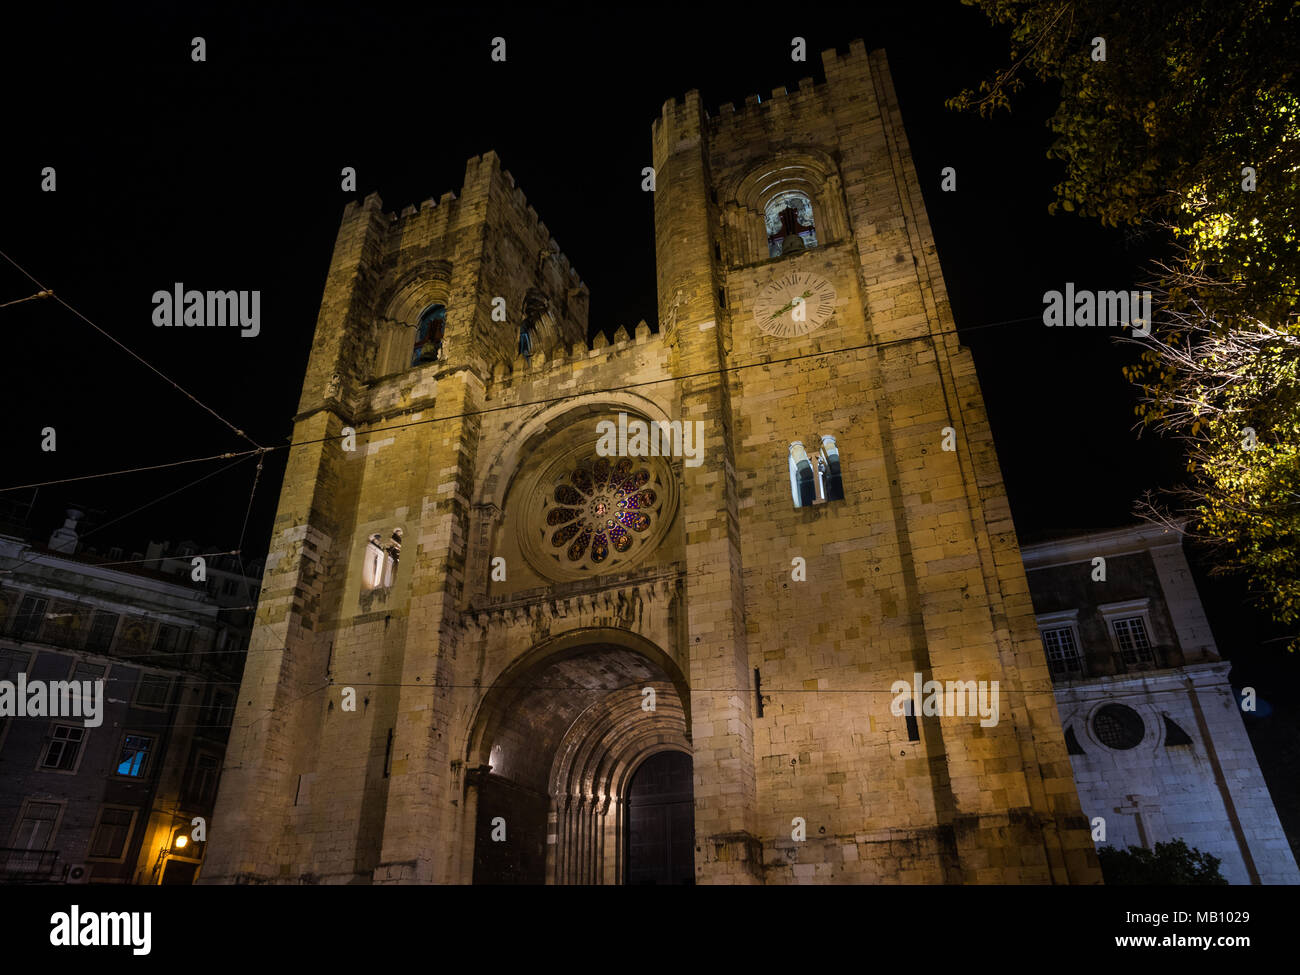 Vue de nuit de la belle façade médiévale de cathédrale Sainte-Marie-Majeure à Lisbonne, construite au 12ème siècle Banque D'Images